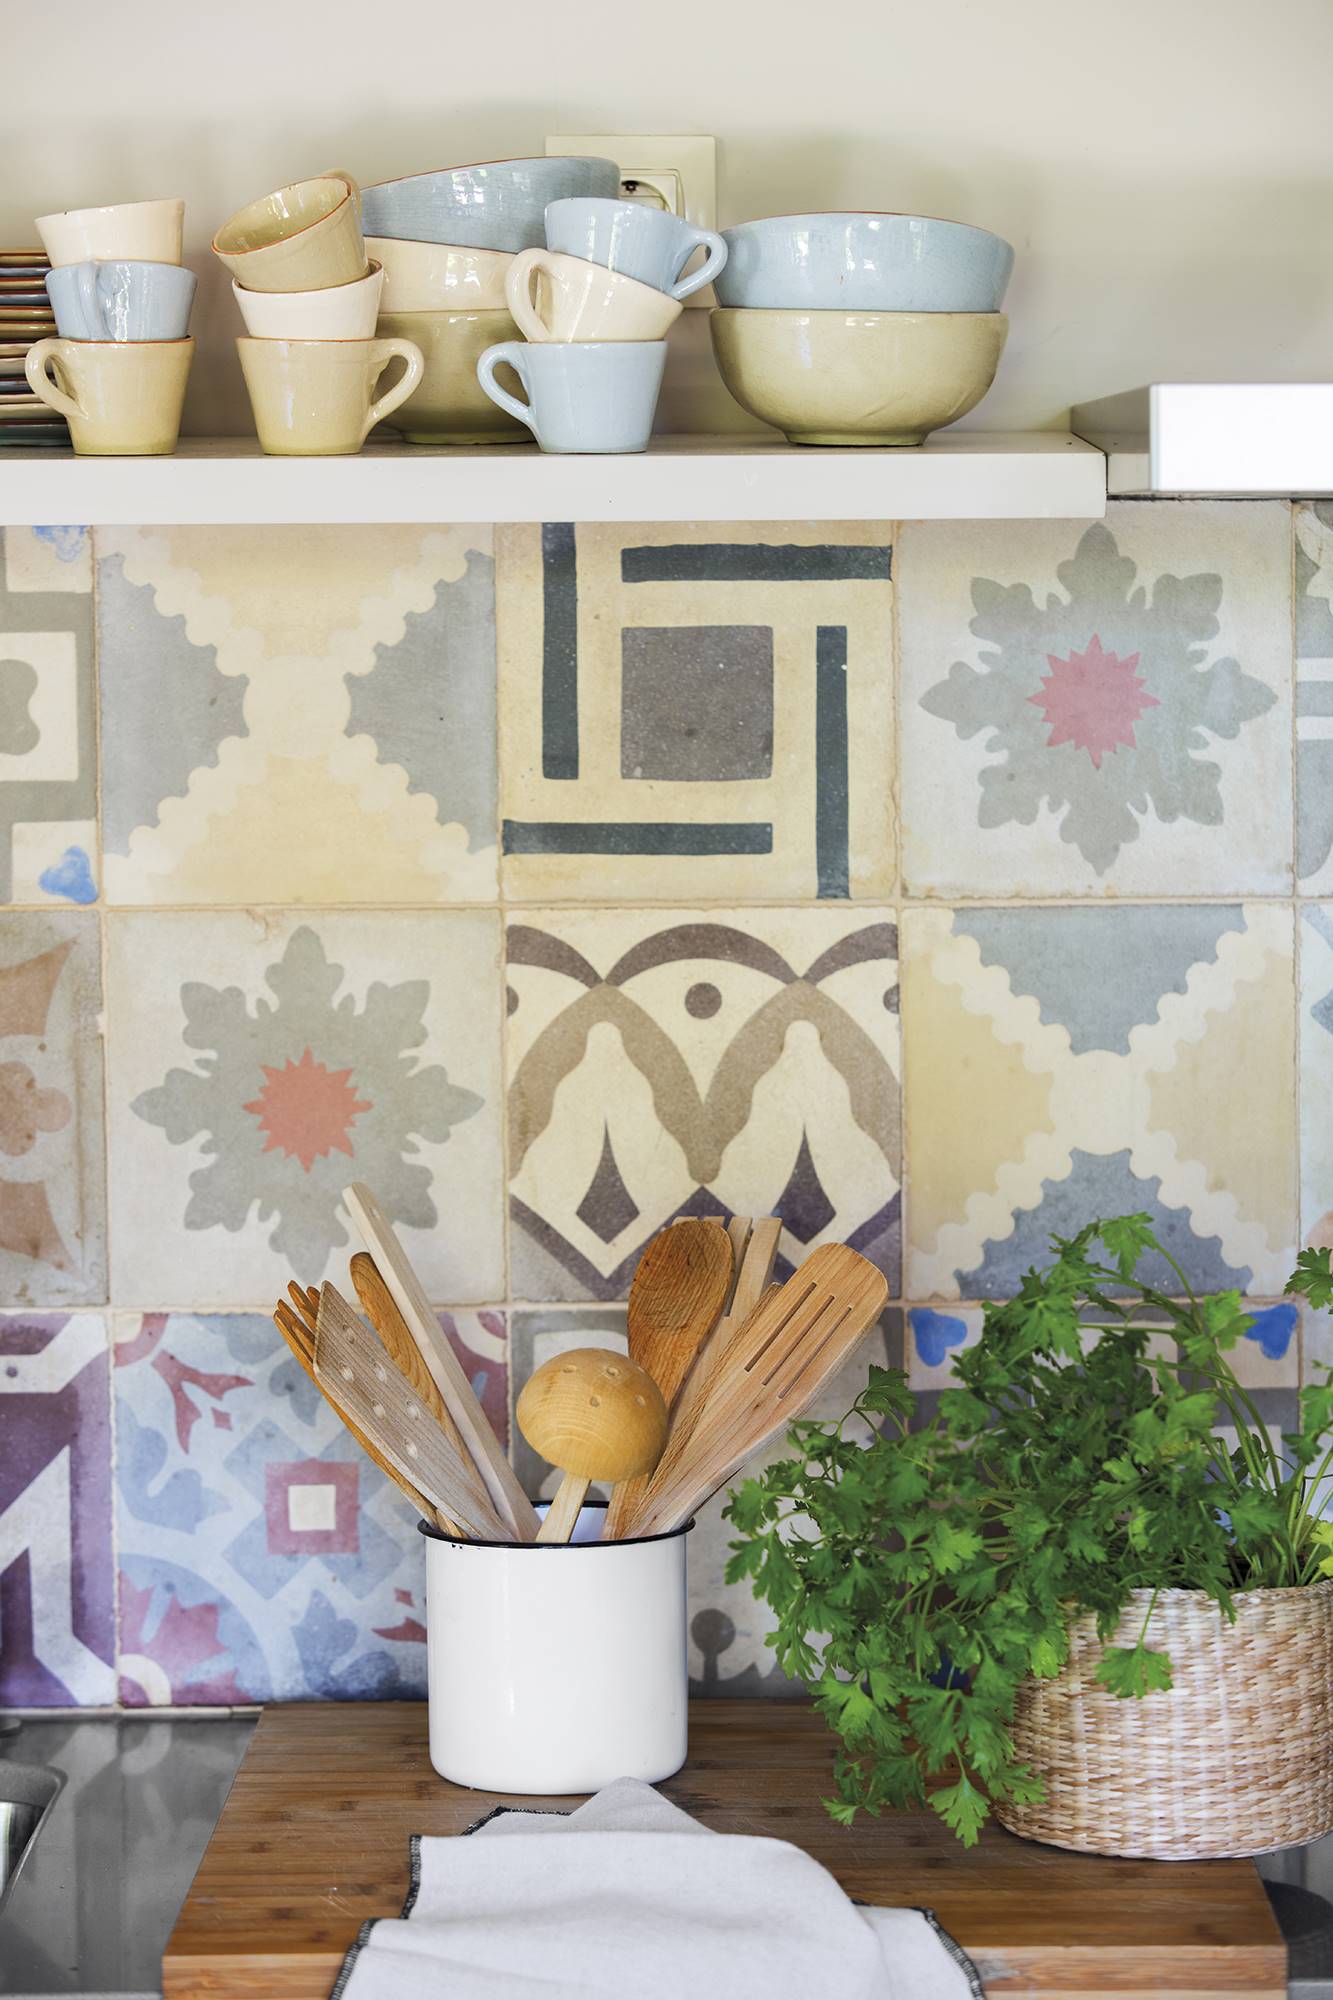 Detalle de antepecho de cocina con azulejos de colores.